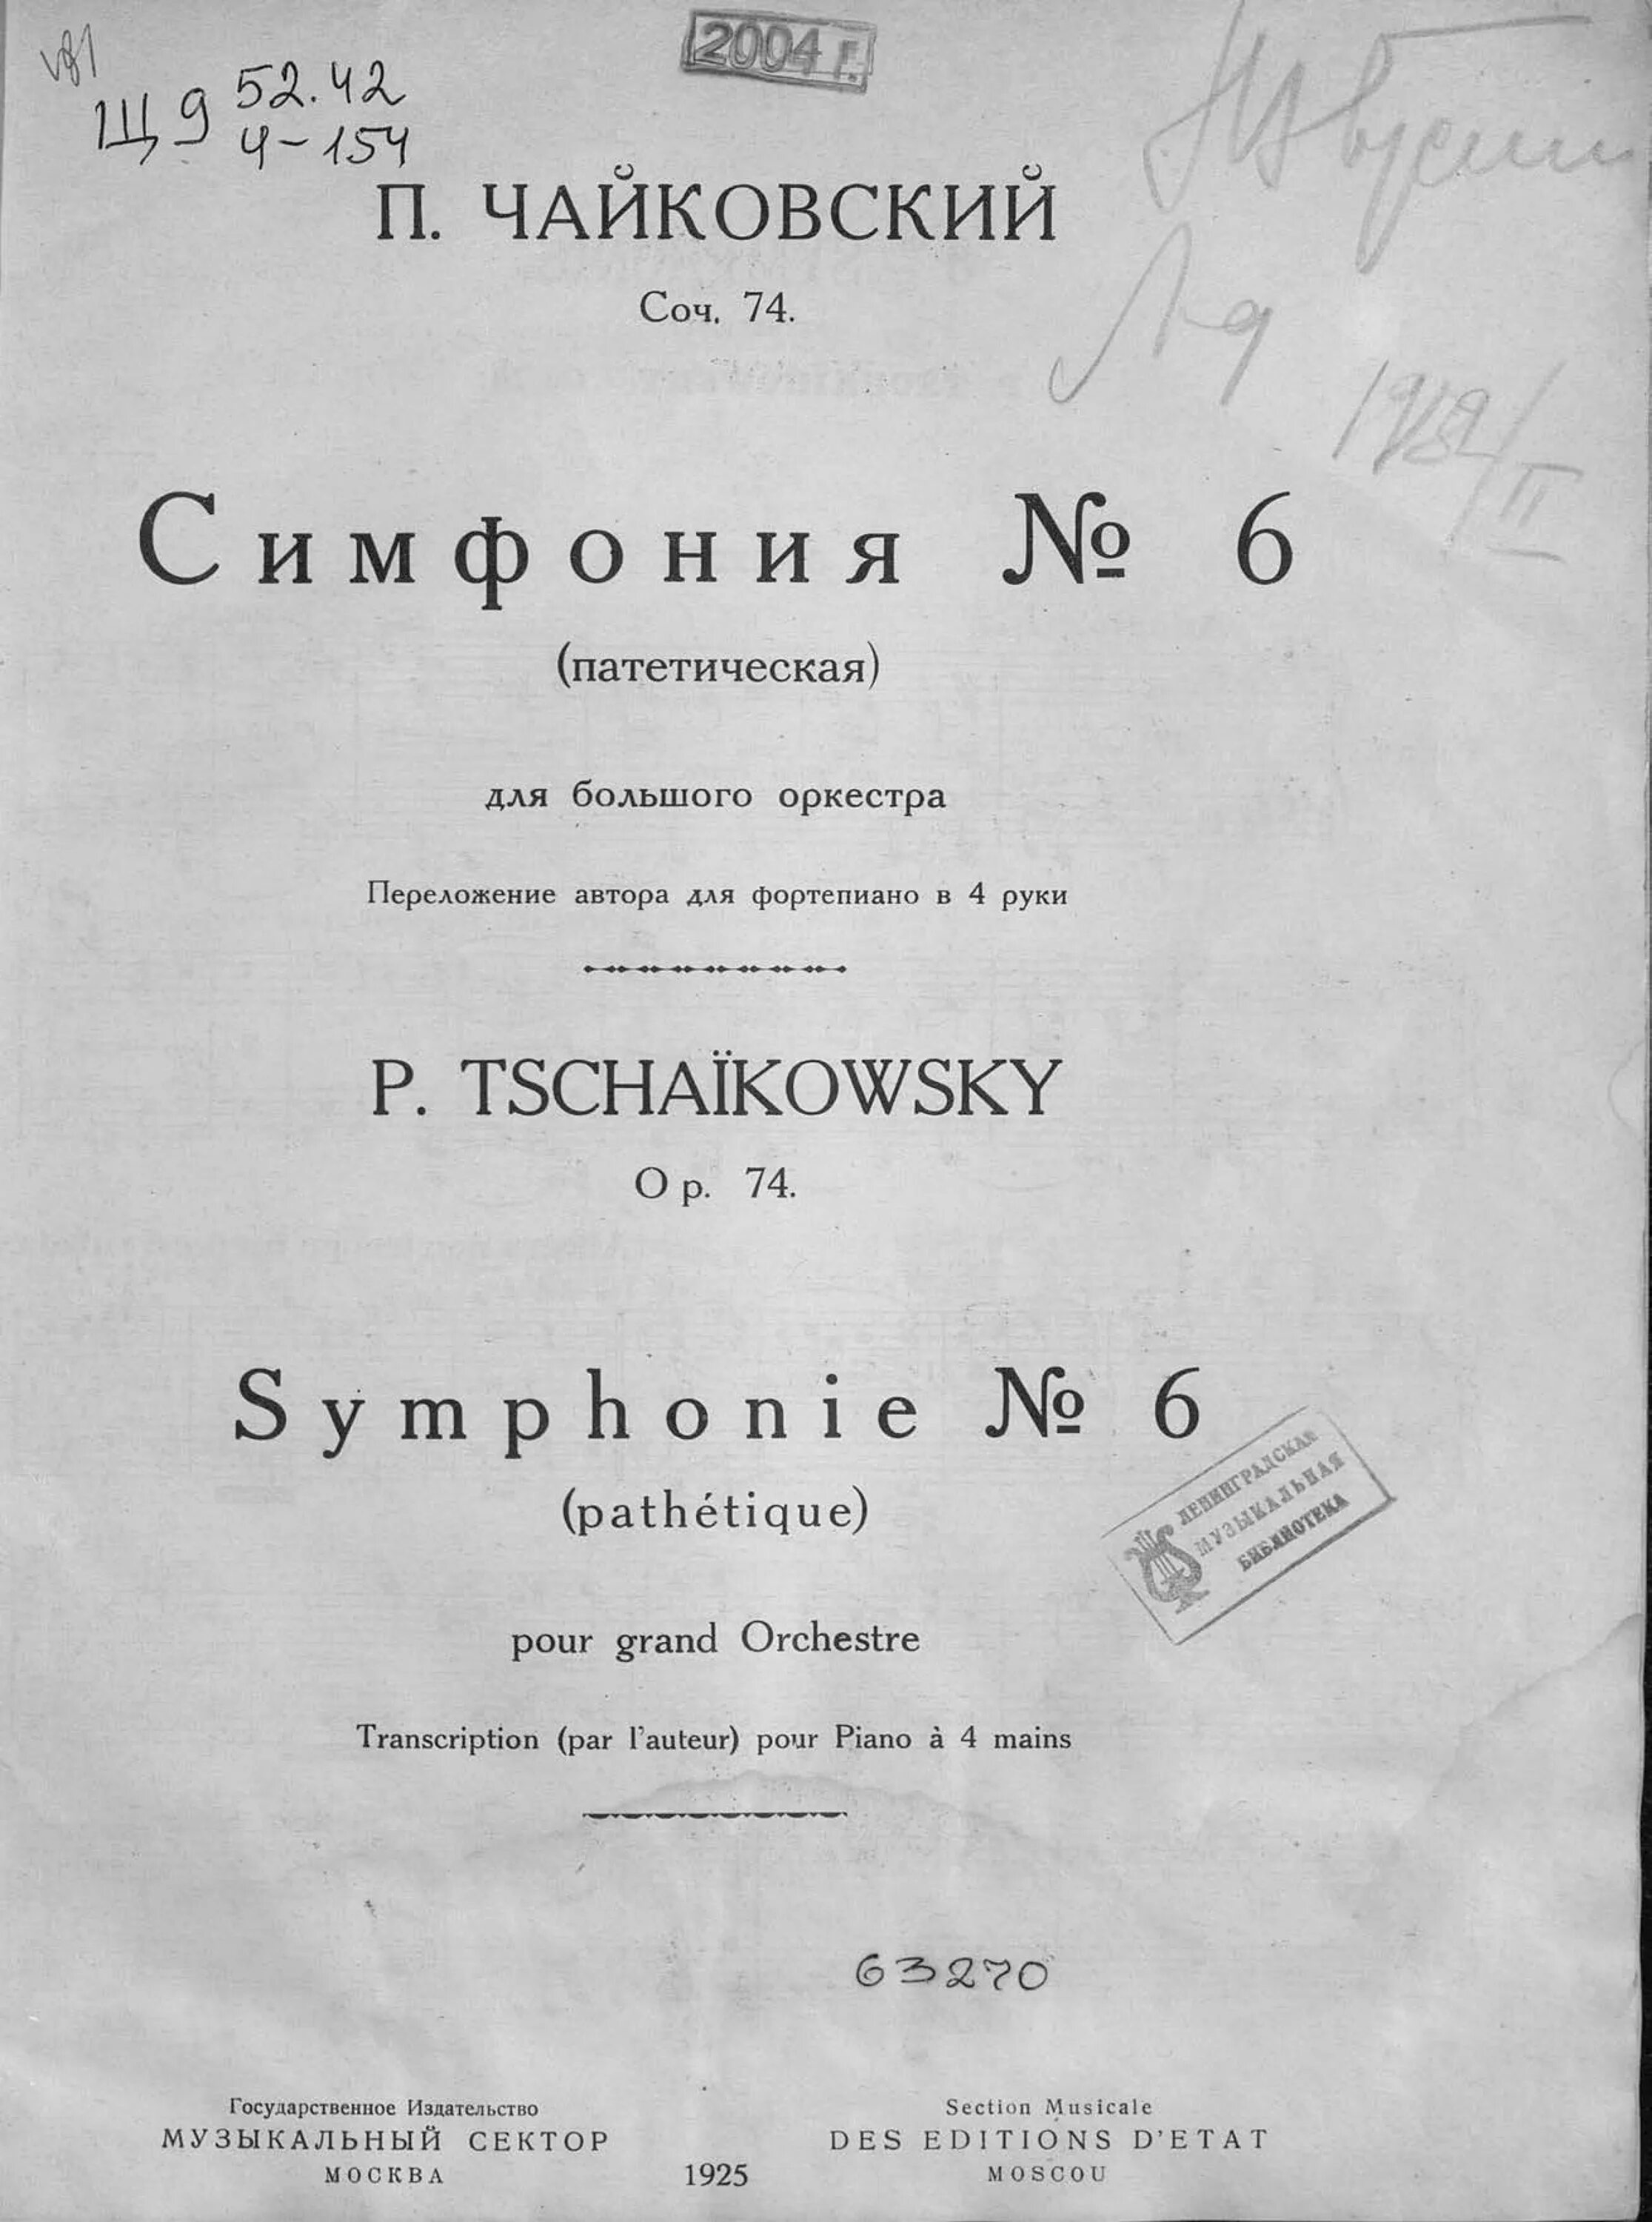 Чайковский симфония 6 Патетическая. Шестая, «Патетическая» симфония. Чайковского.